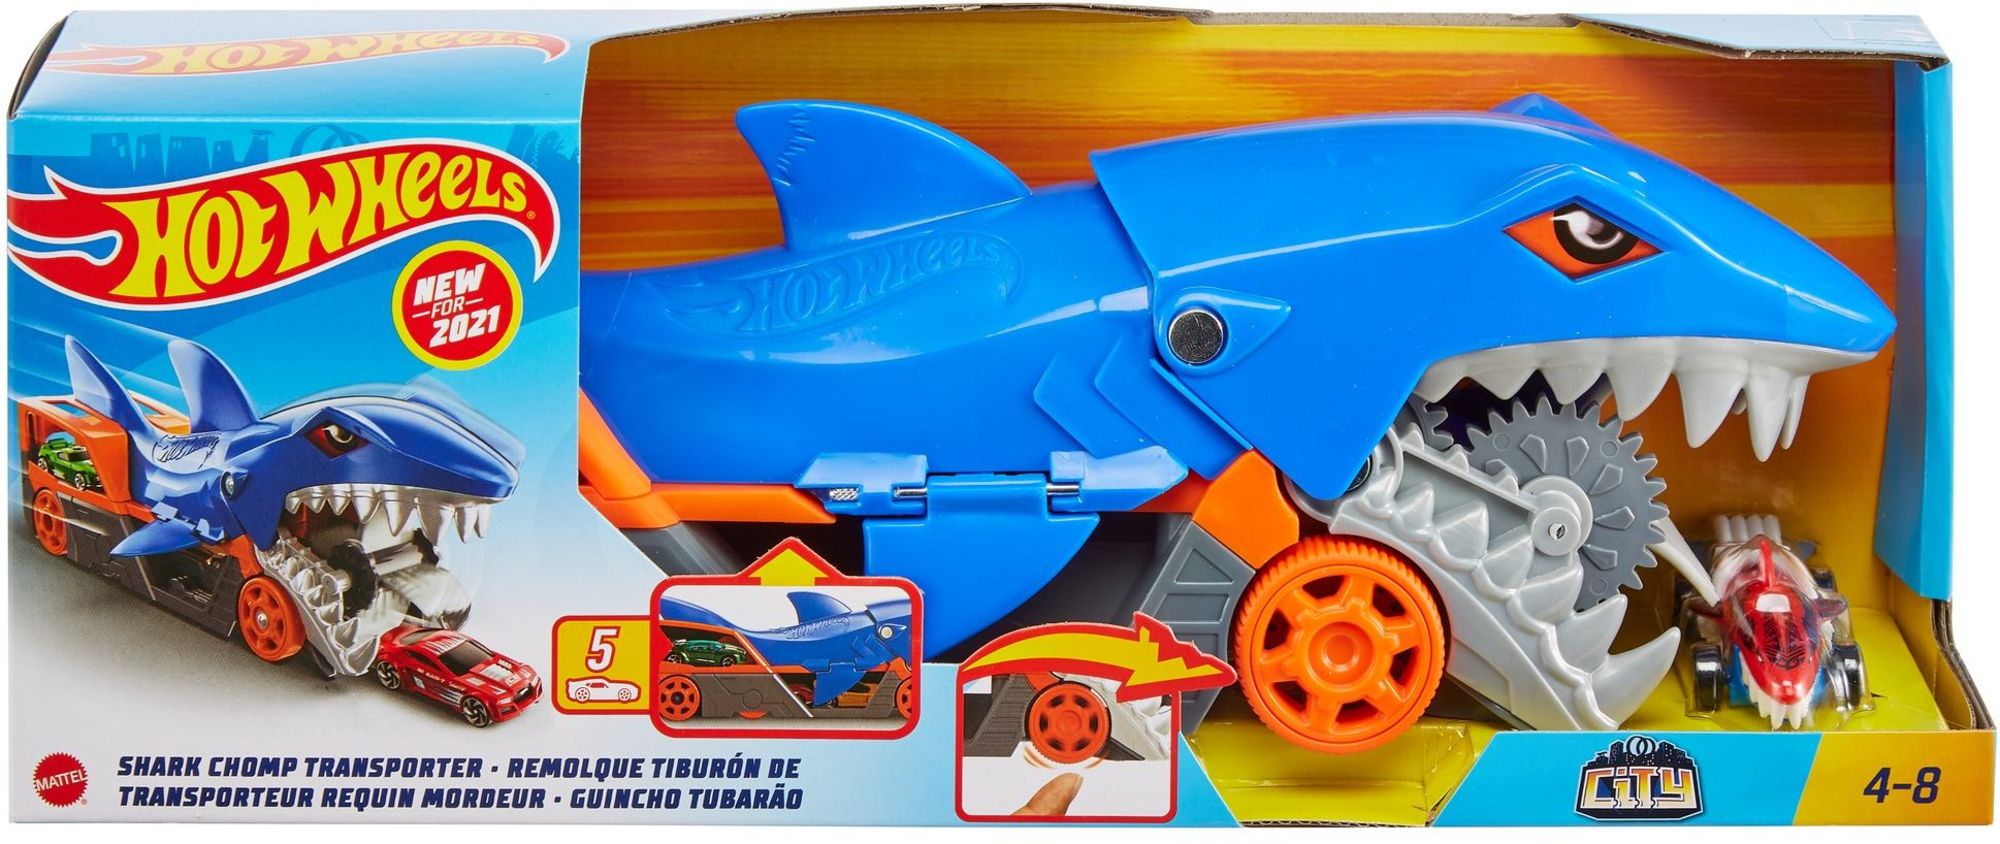 Hot Wheels - Hungriger Spielzeugautos\' bis zu kaufen Hai-Transporter Spielwaren für 5 